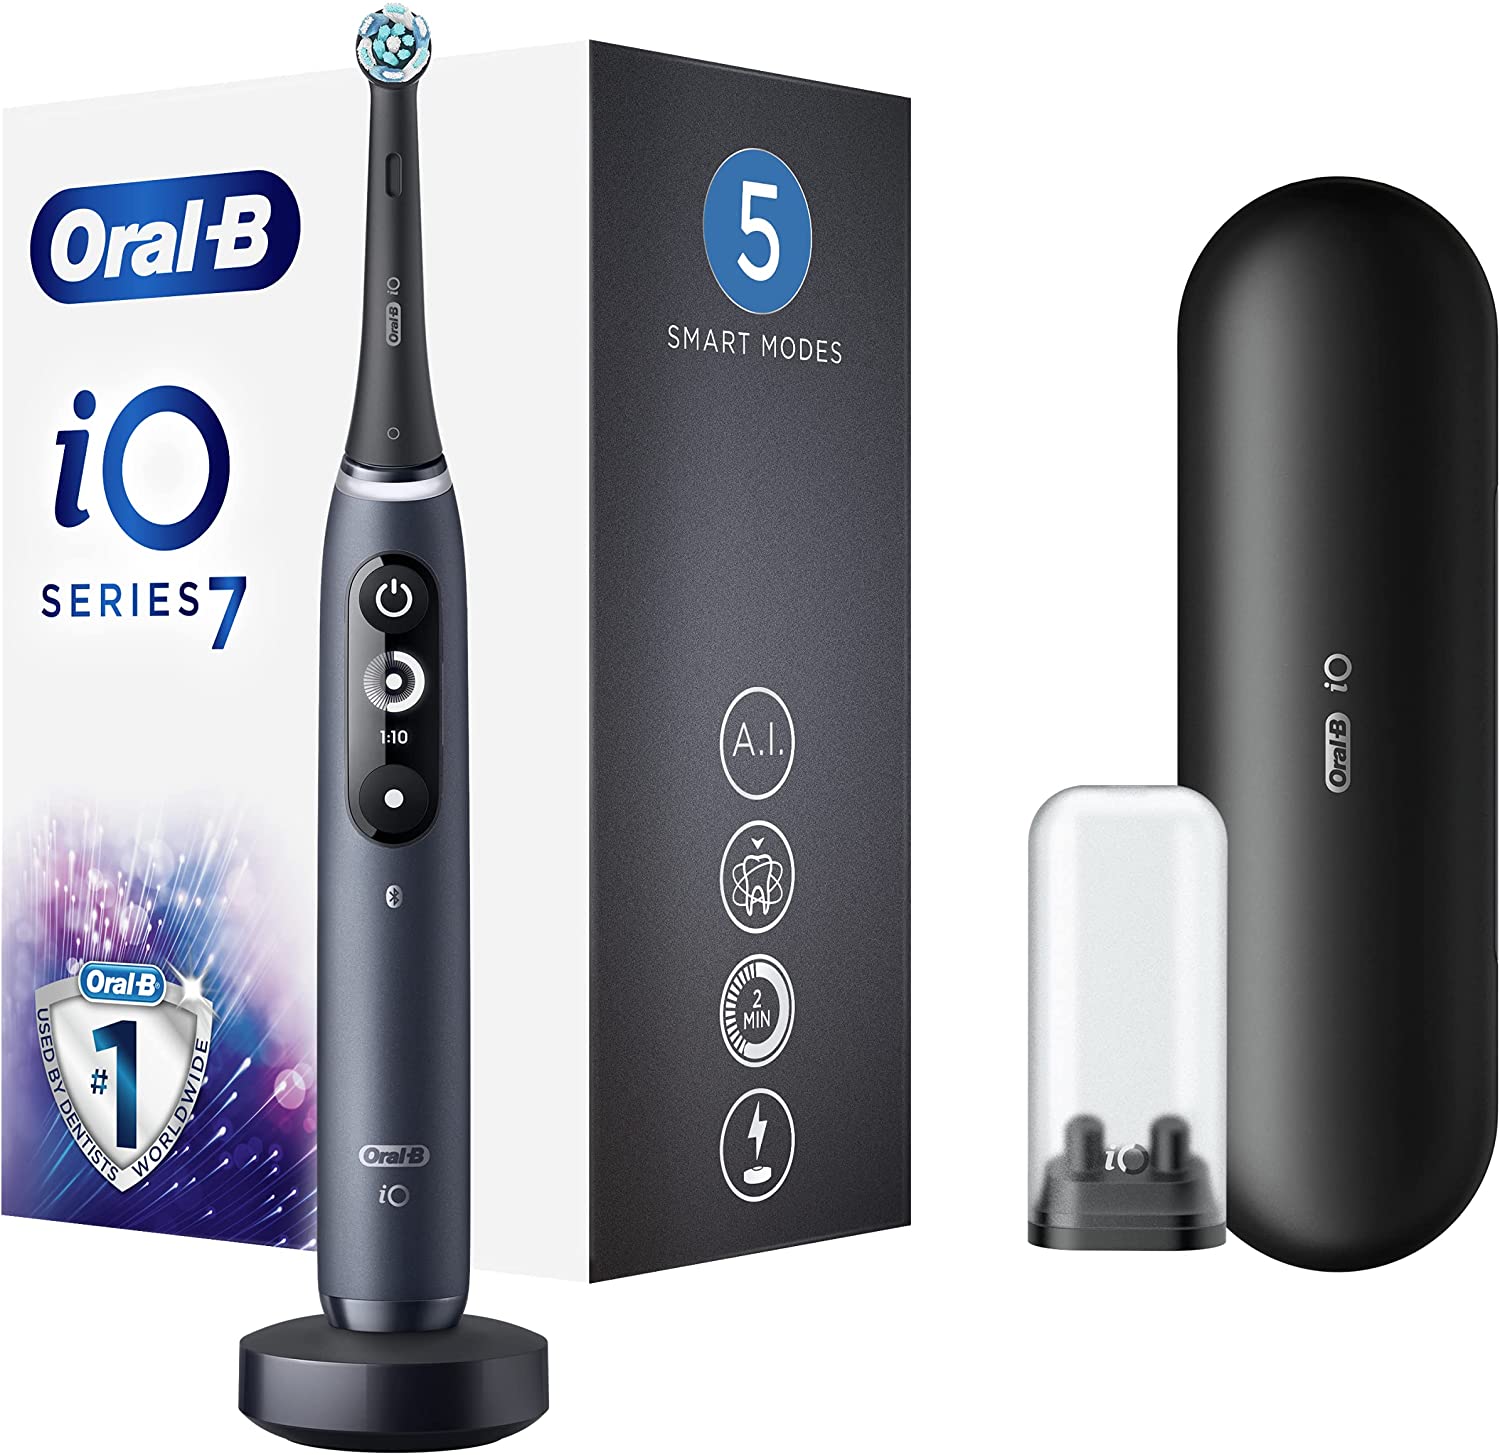 Super offerta: Oral-B iO 7n, spazzolino connesso ad iPhone, solo 159,99 euro